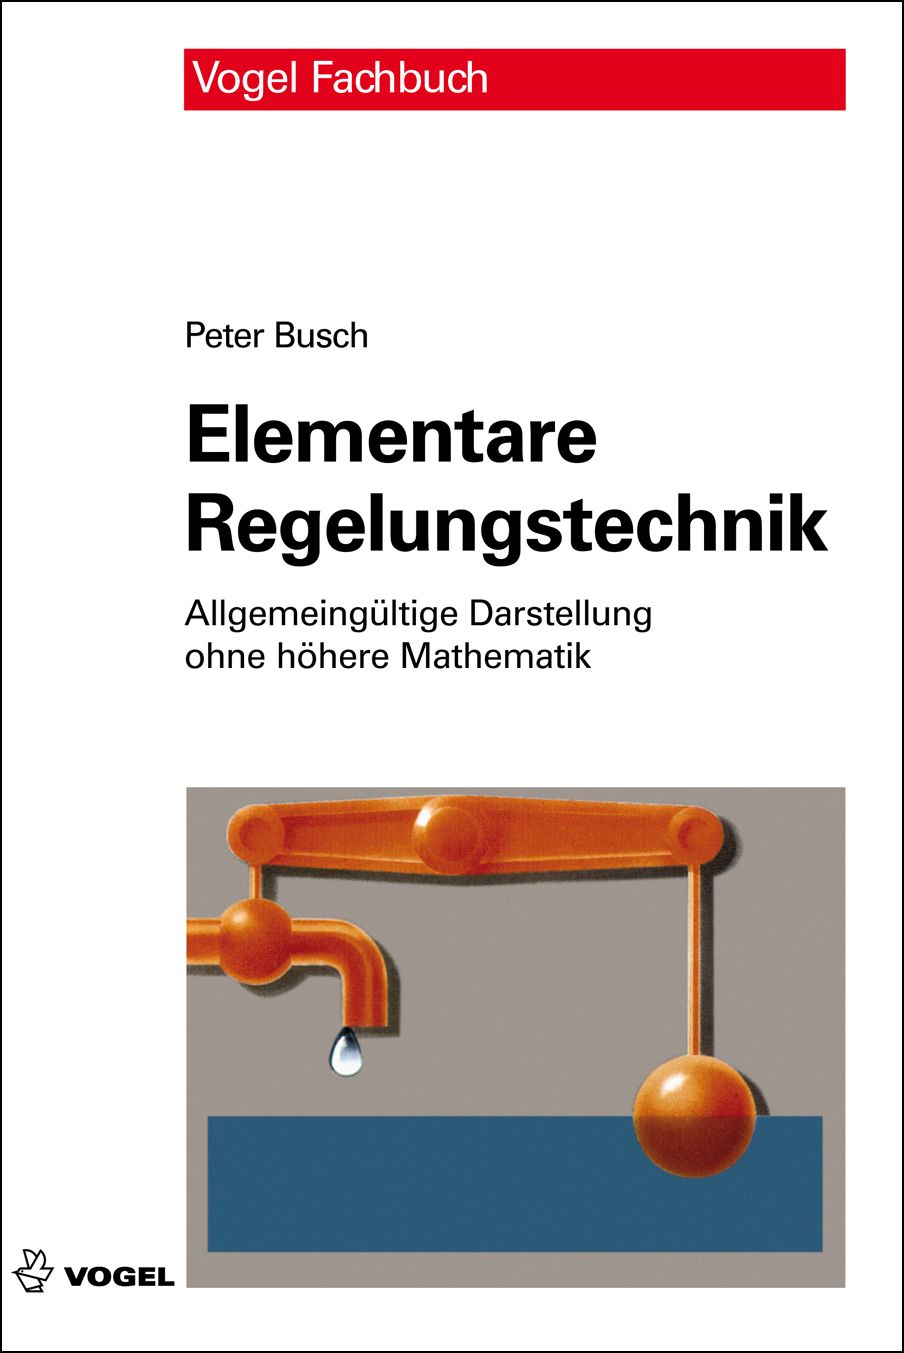 Das Fachbuch "Elementare Regelungstechnik" von Peter Busch